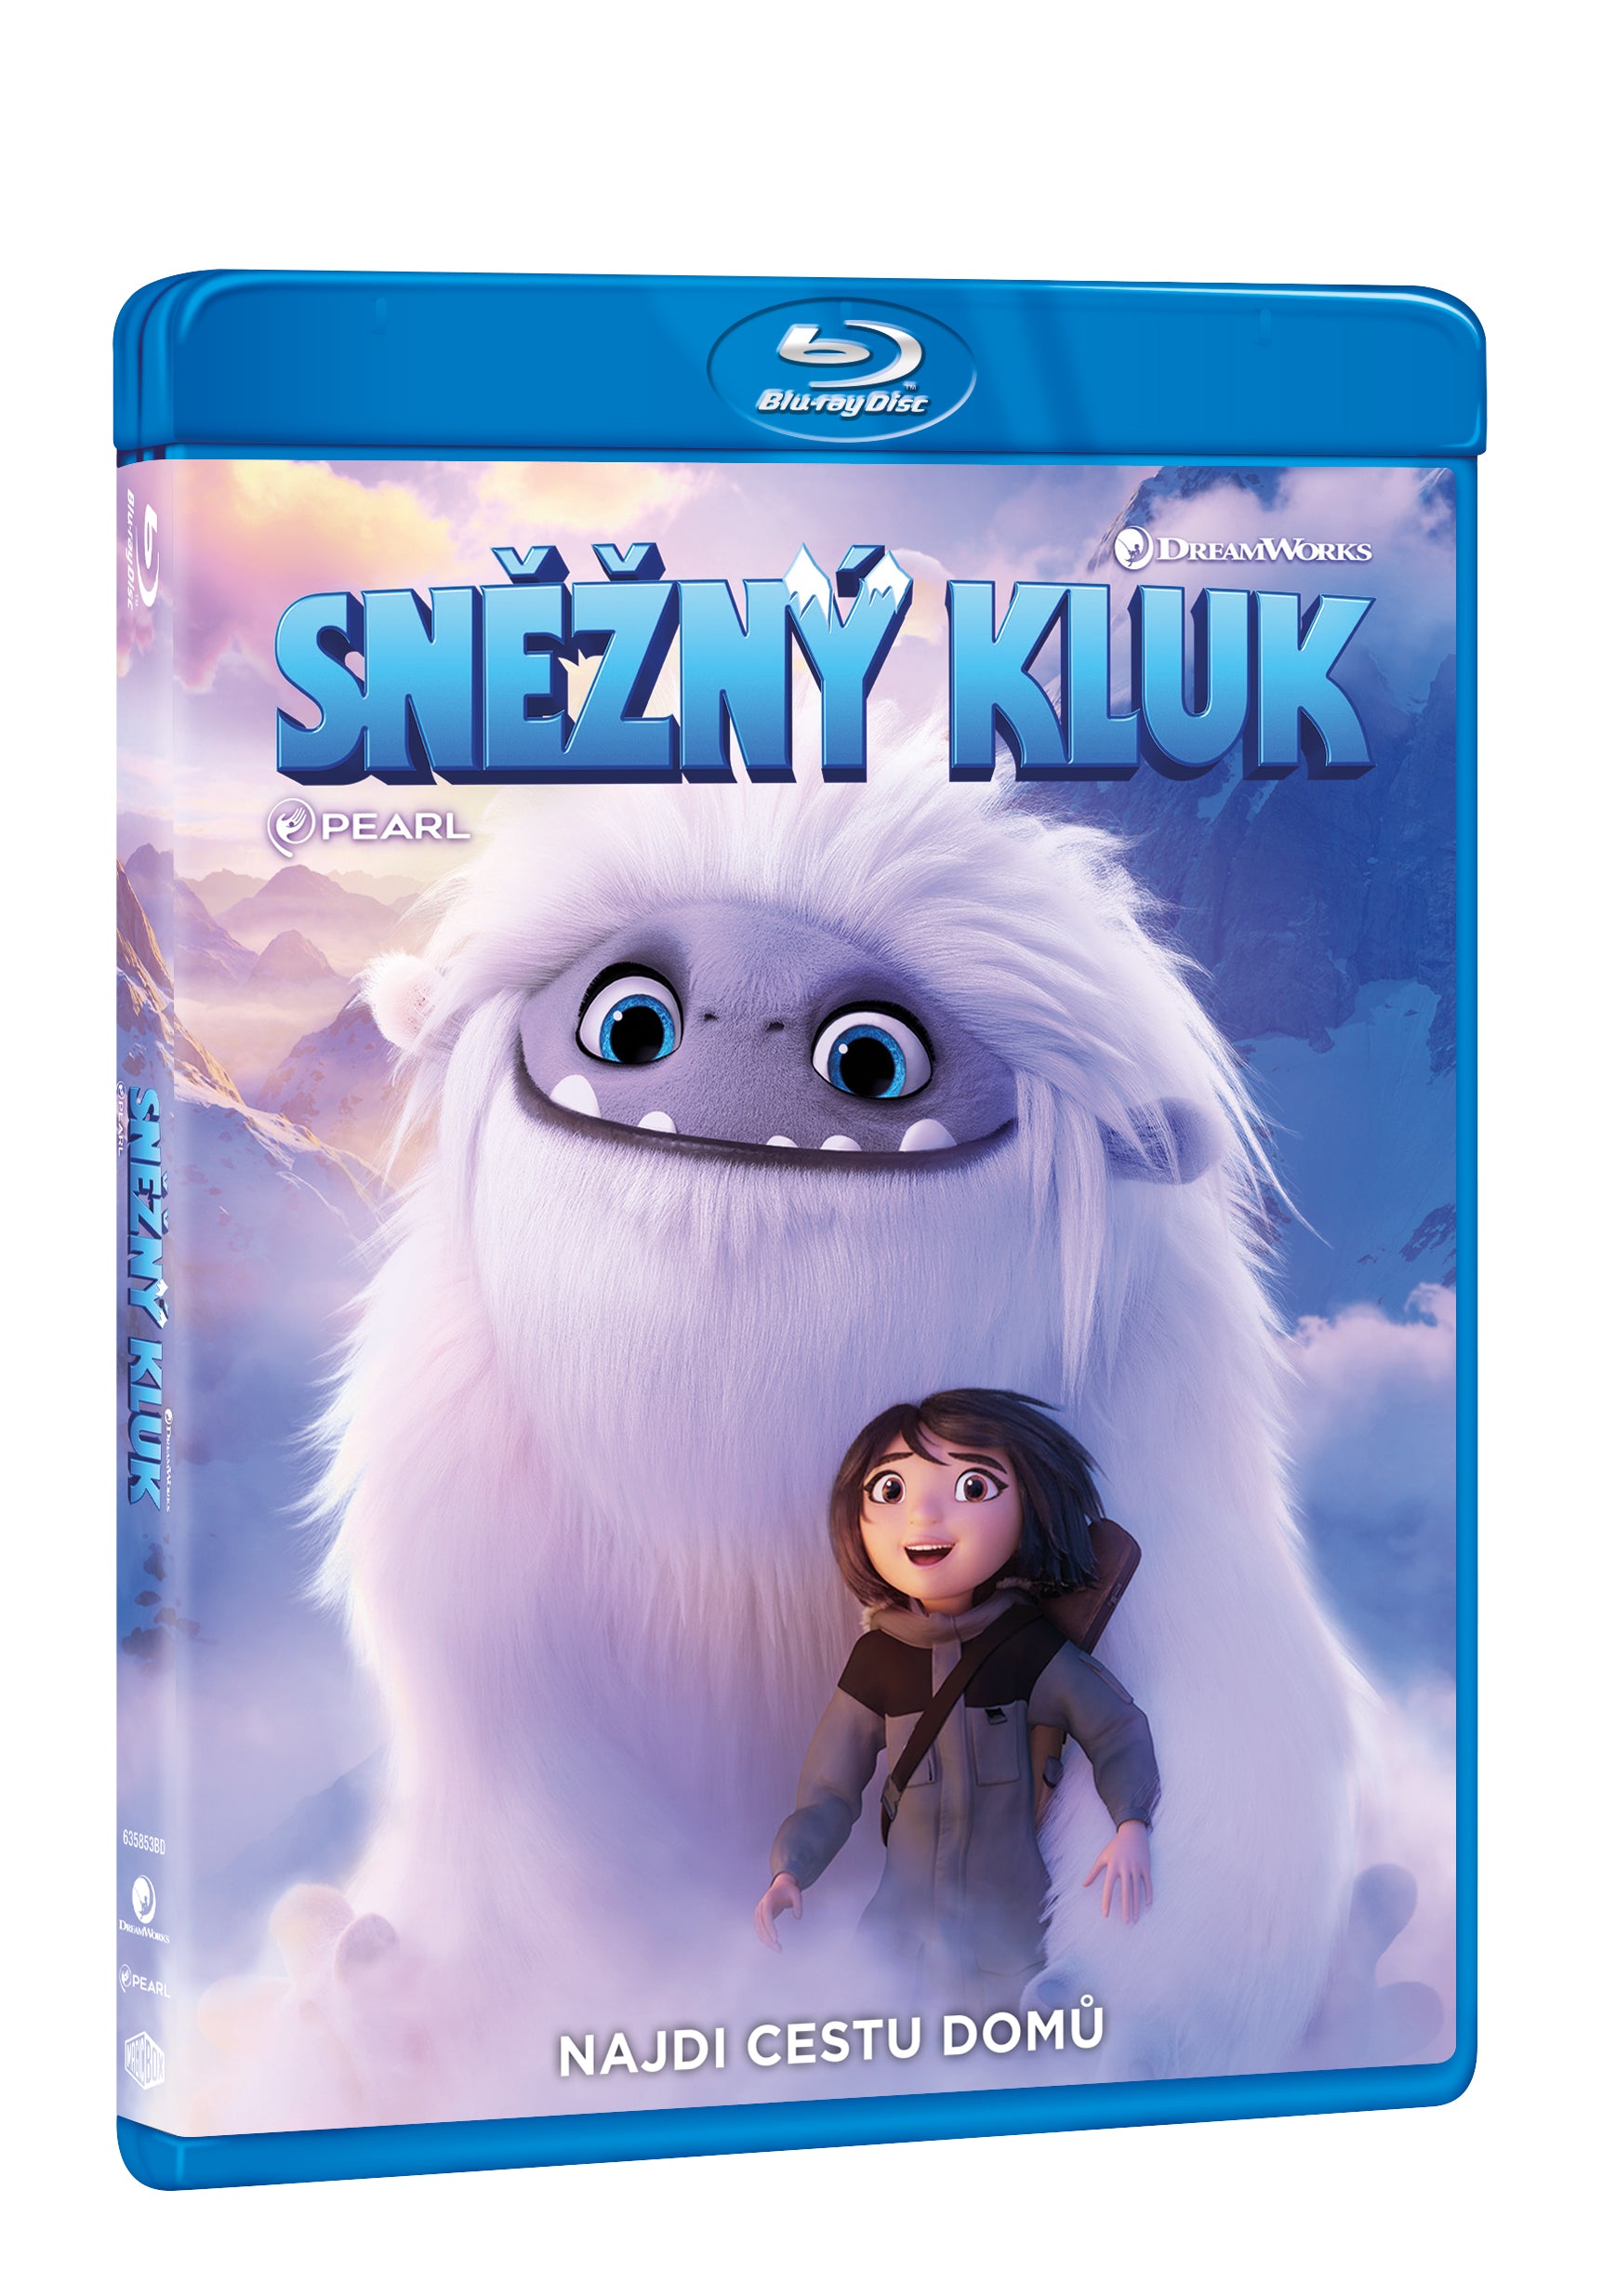 Snezny kluk BD / Abominable - Czech version